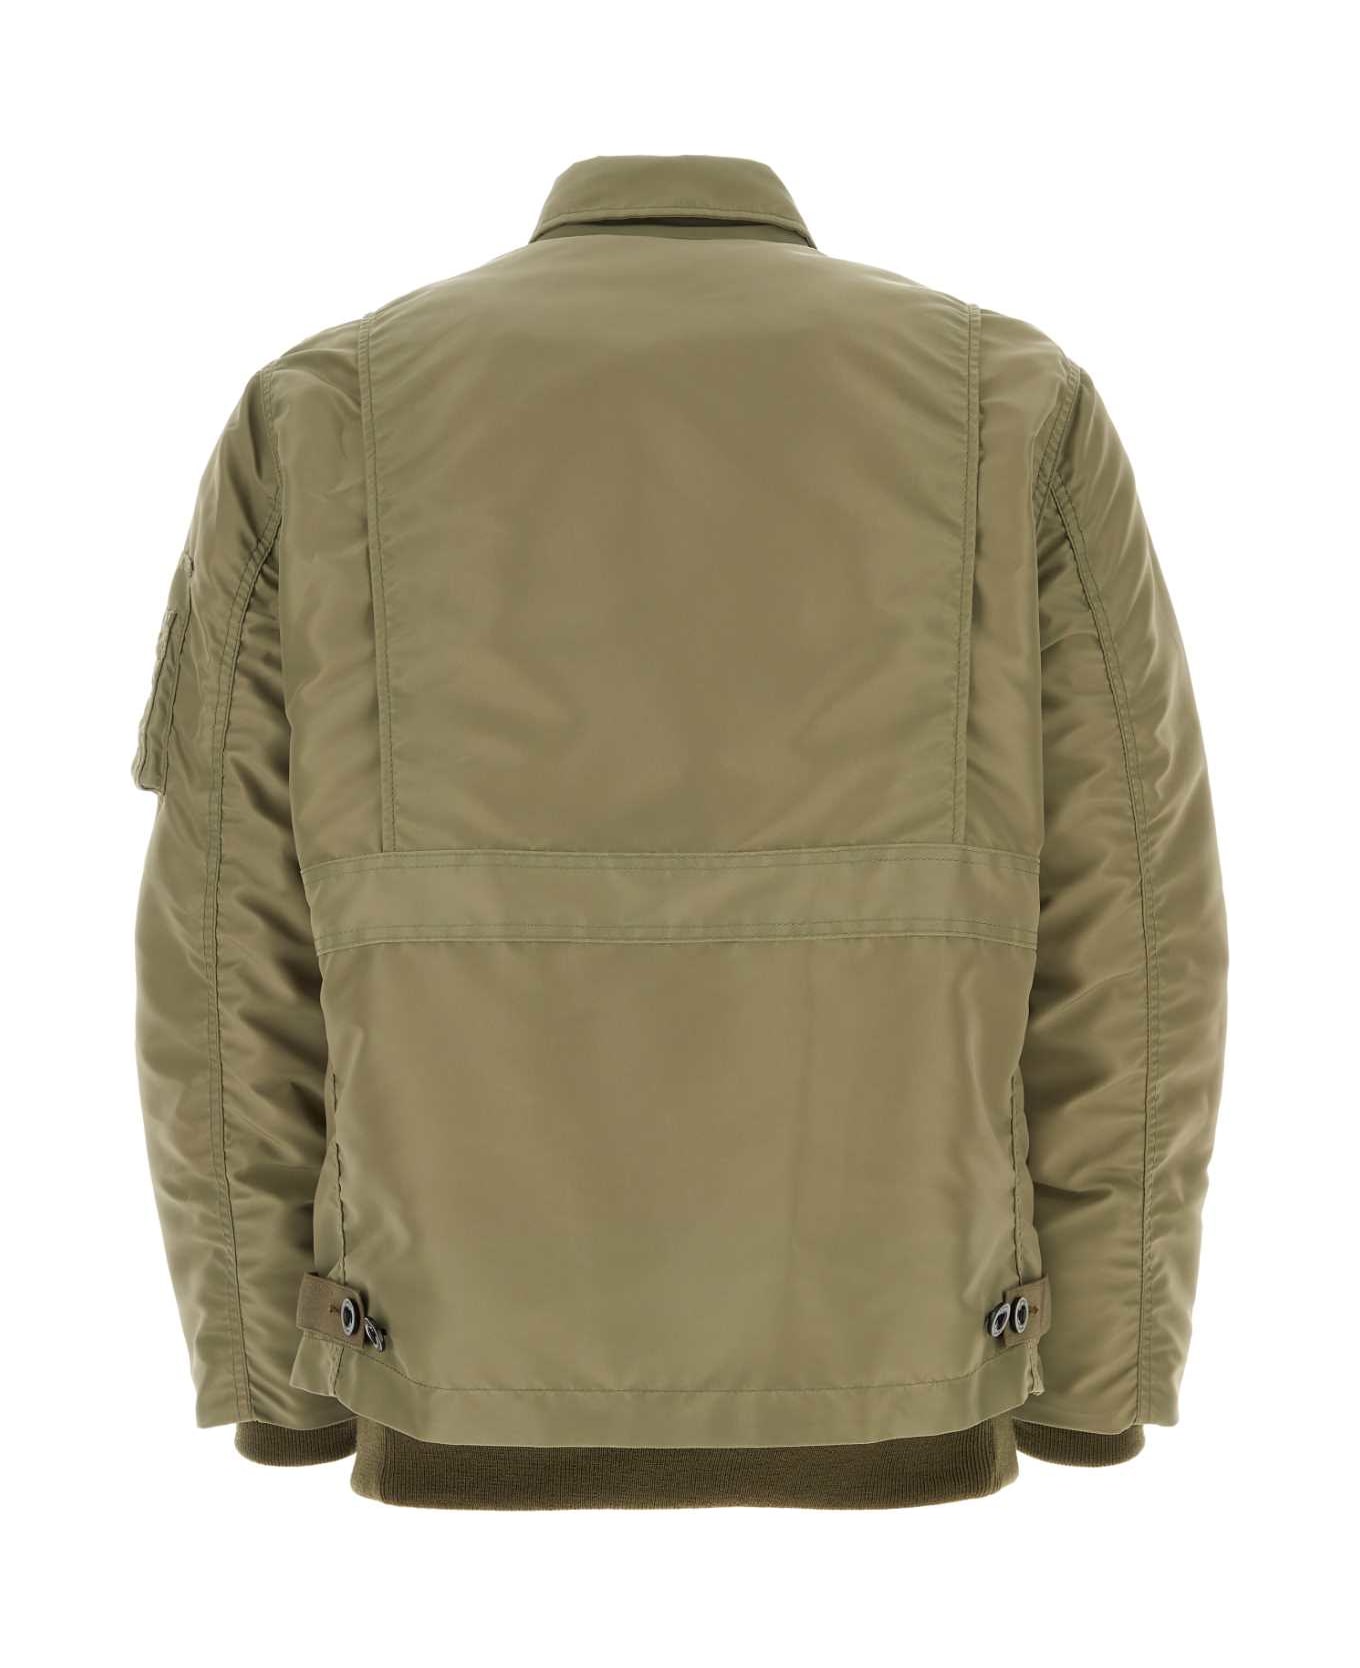 Sacai Army Green Nylon Jacket - LKHAKI